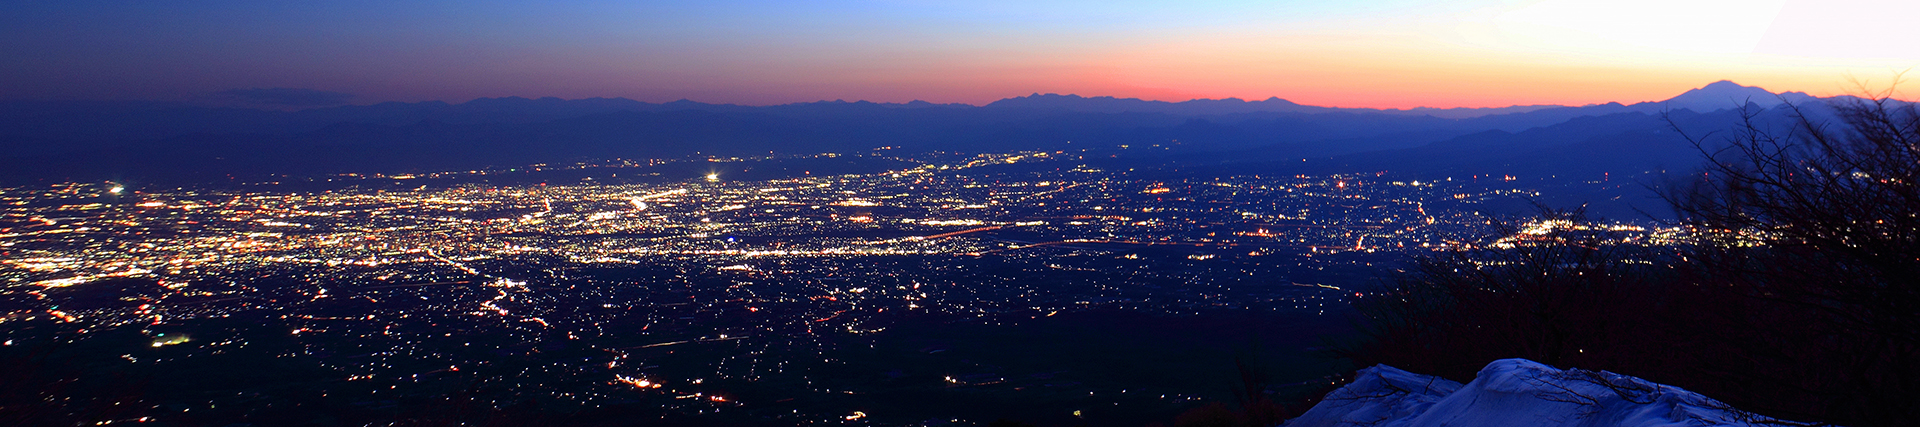 赤城・鍋割山からの夜景